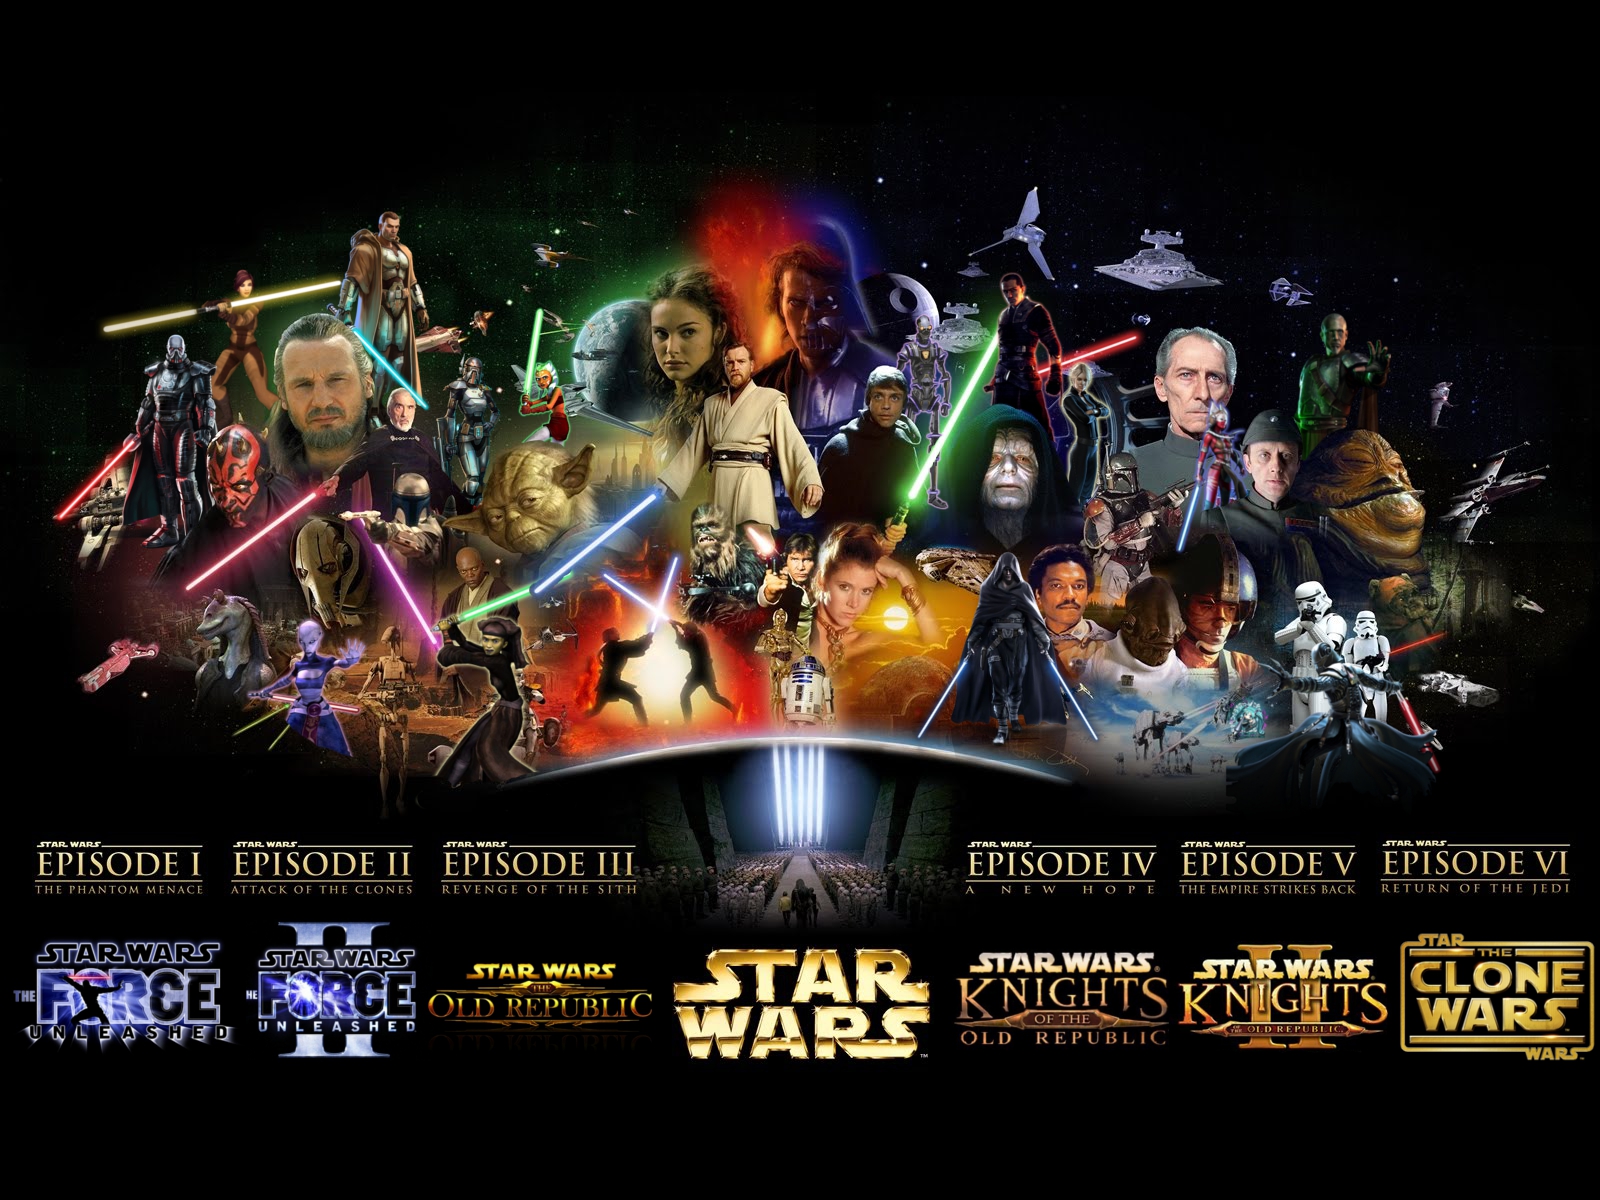 Star wars desktop wallpaper hd